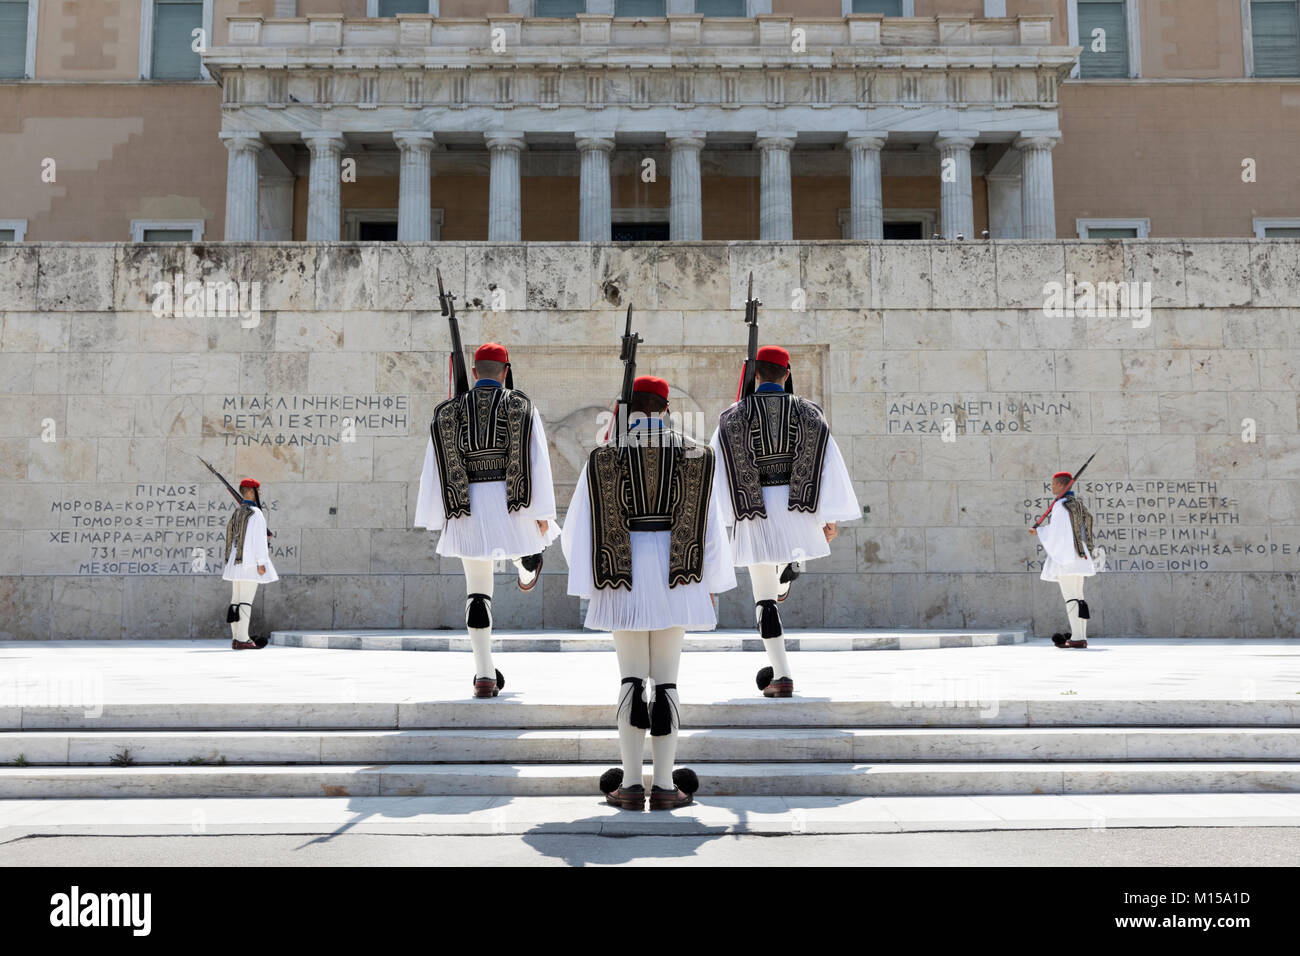 Die wachablösung am Grab des Unbekannten Soldaten in den Syntagma-platz, Athen, Griechenland, Europa Stockfoto